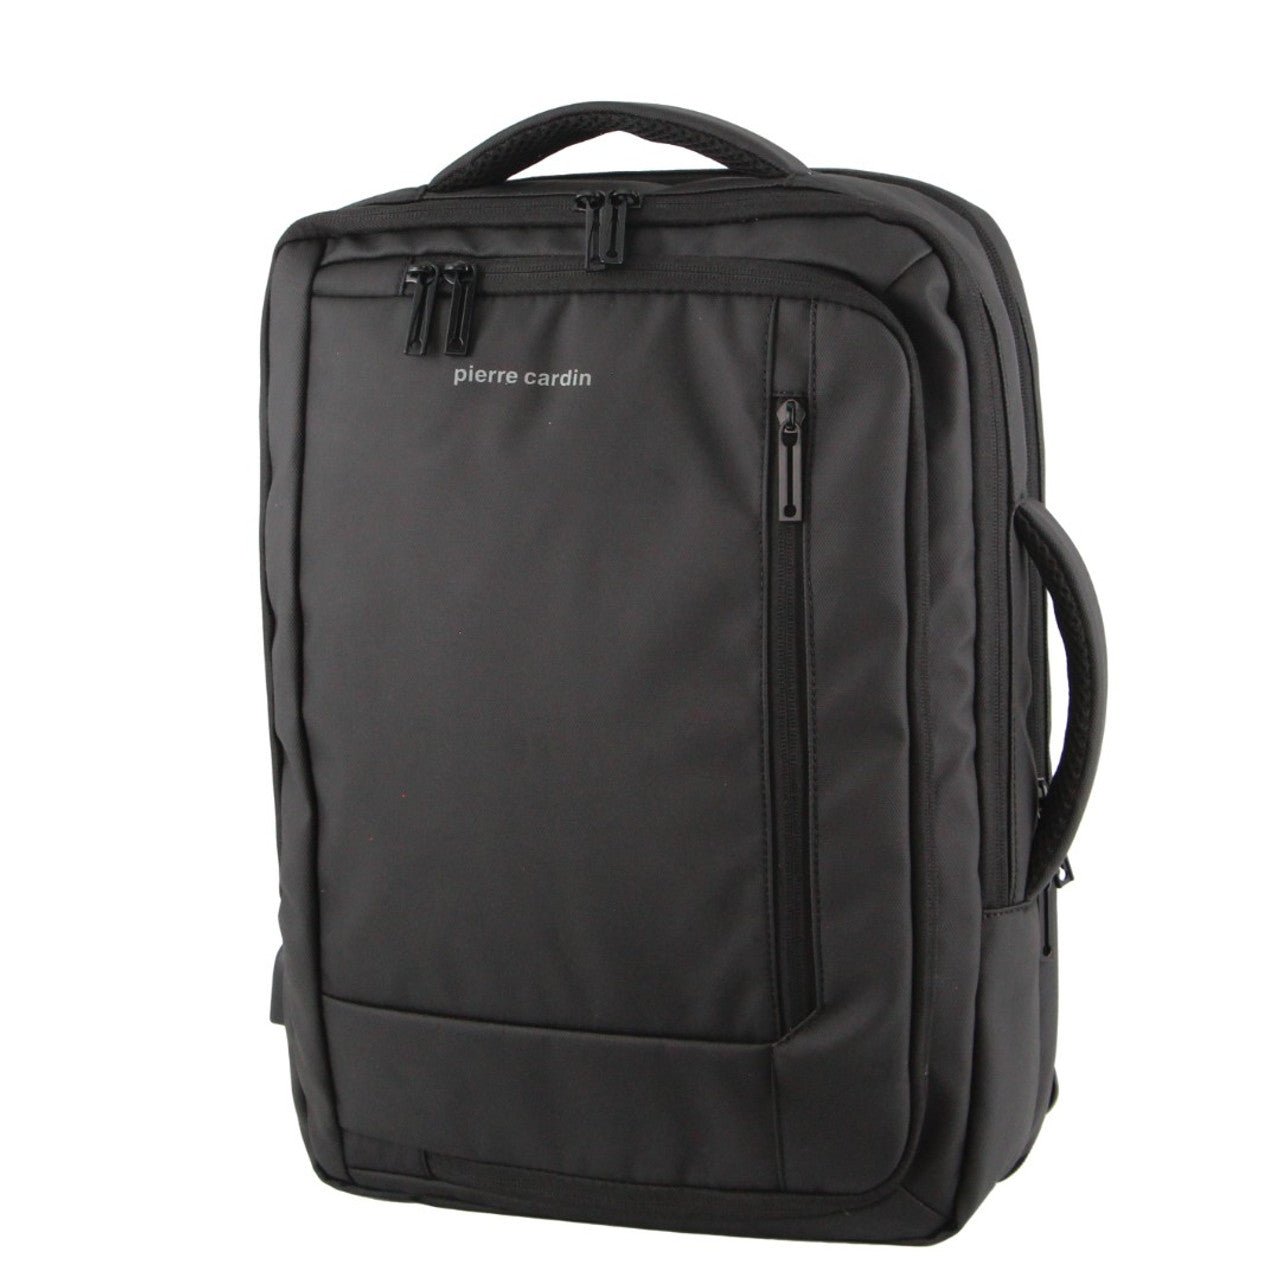 Pierre Cardin -PC3623 Top & Side handle 15in Laptop backpack w USB port - Grey